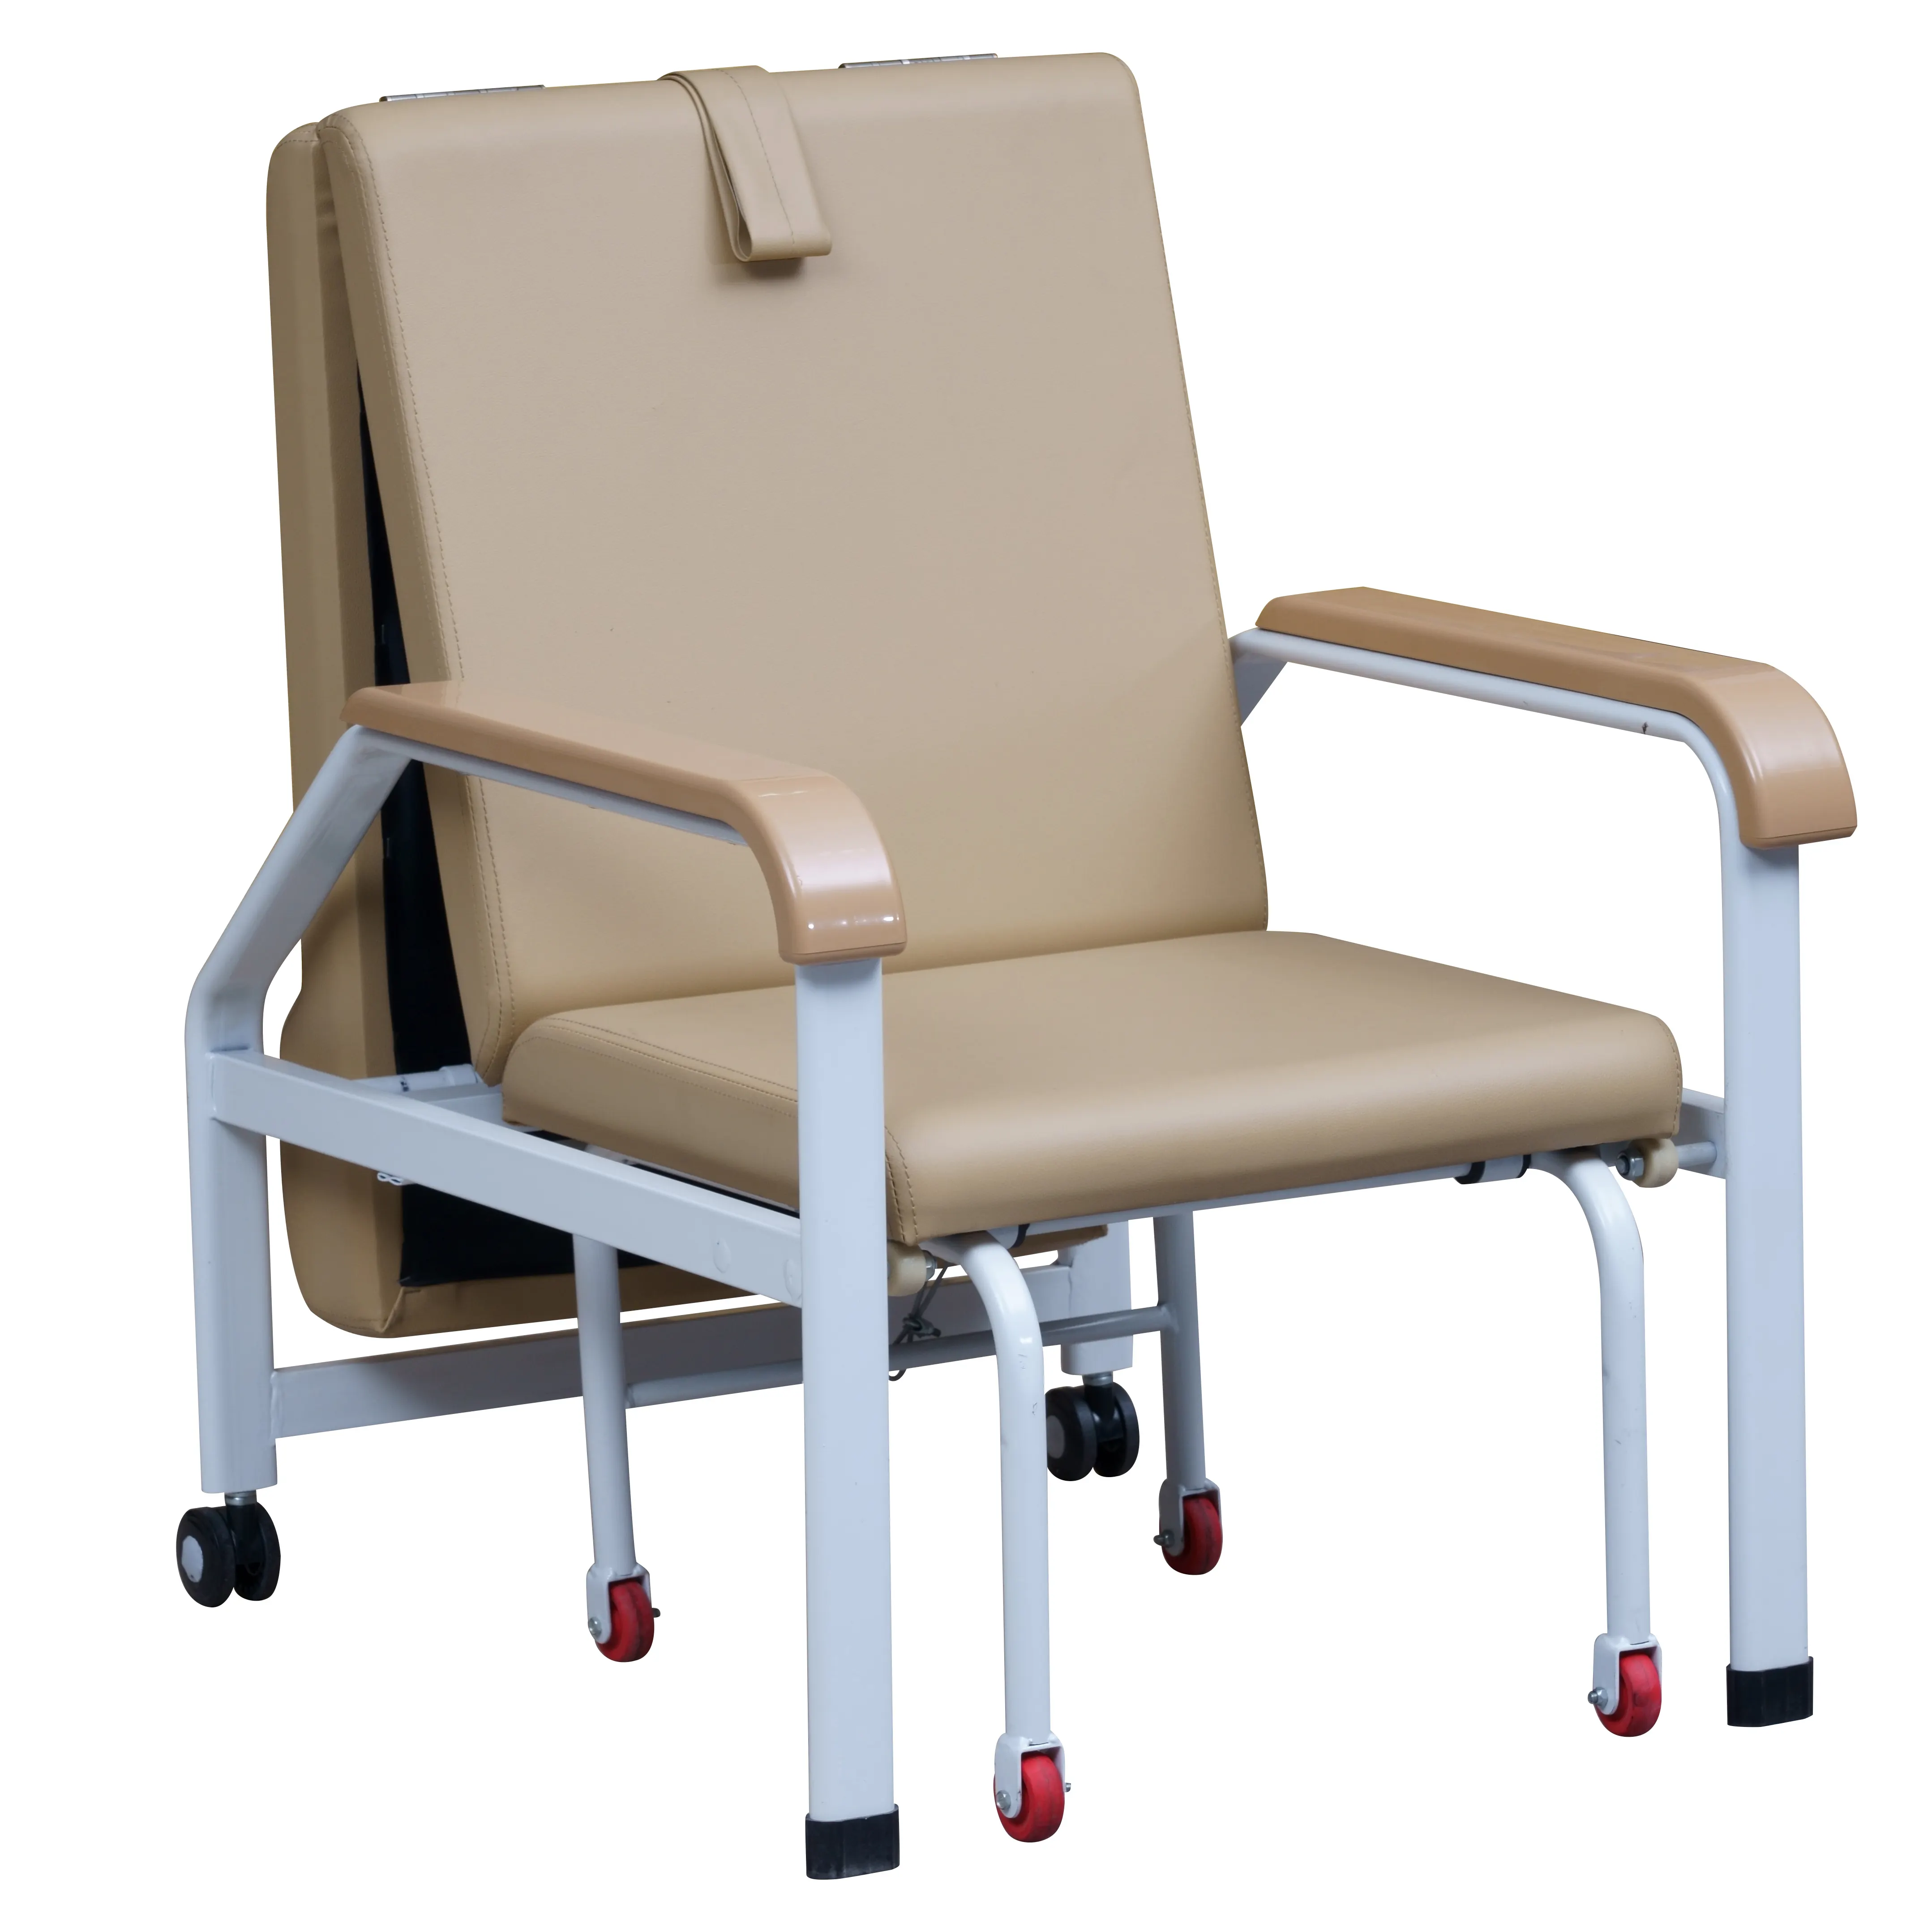 YFY-II sedia di accompagnamento medica F0ldable con la fabbrica della sedia dell'assistente di ospedale del letto